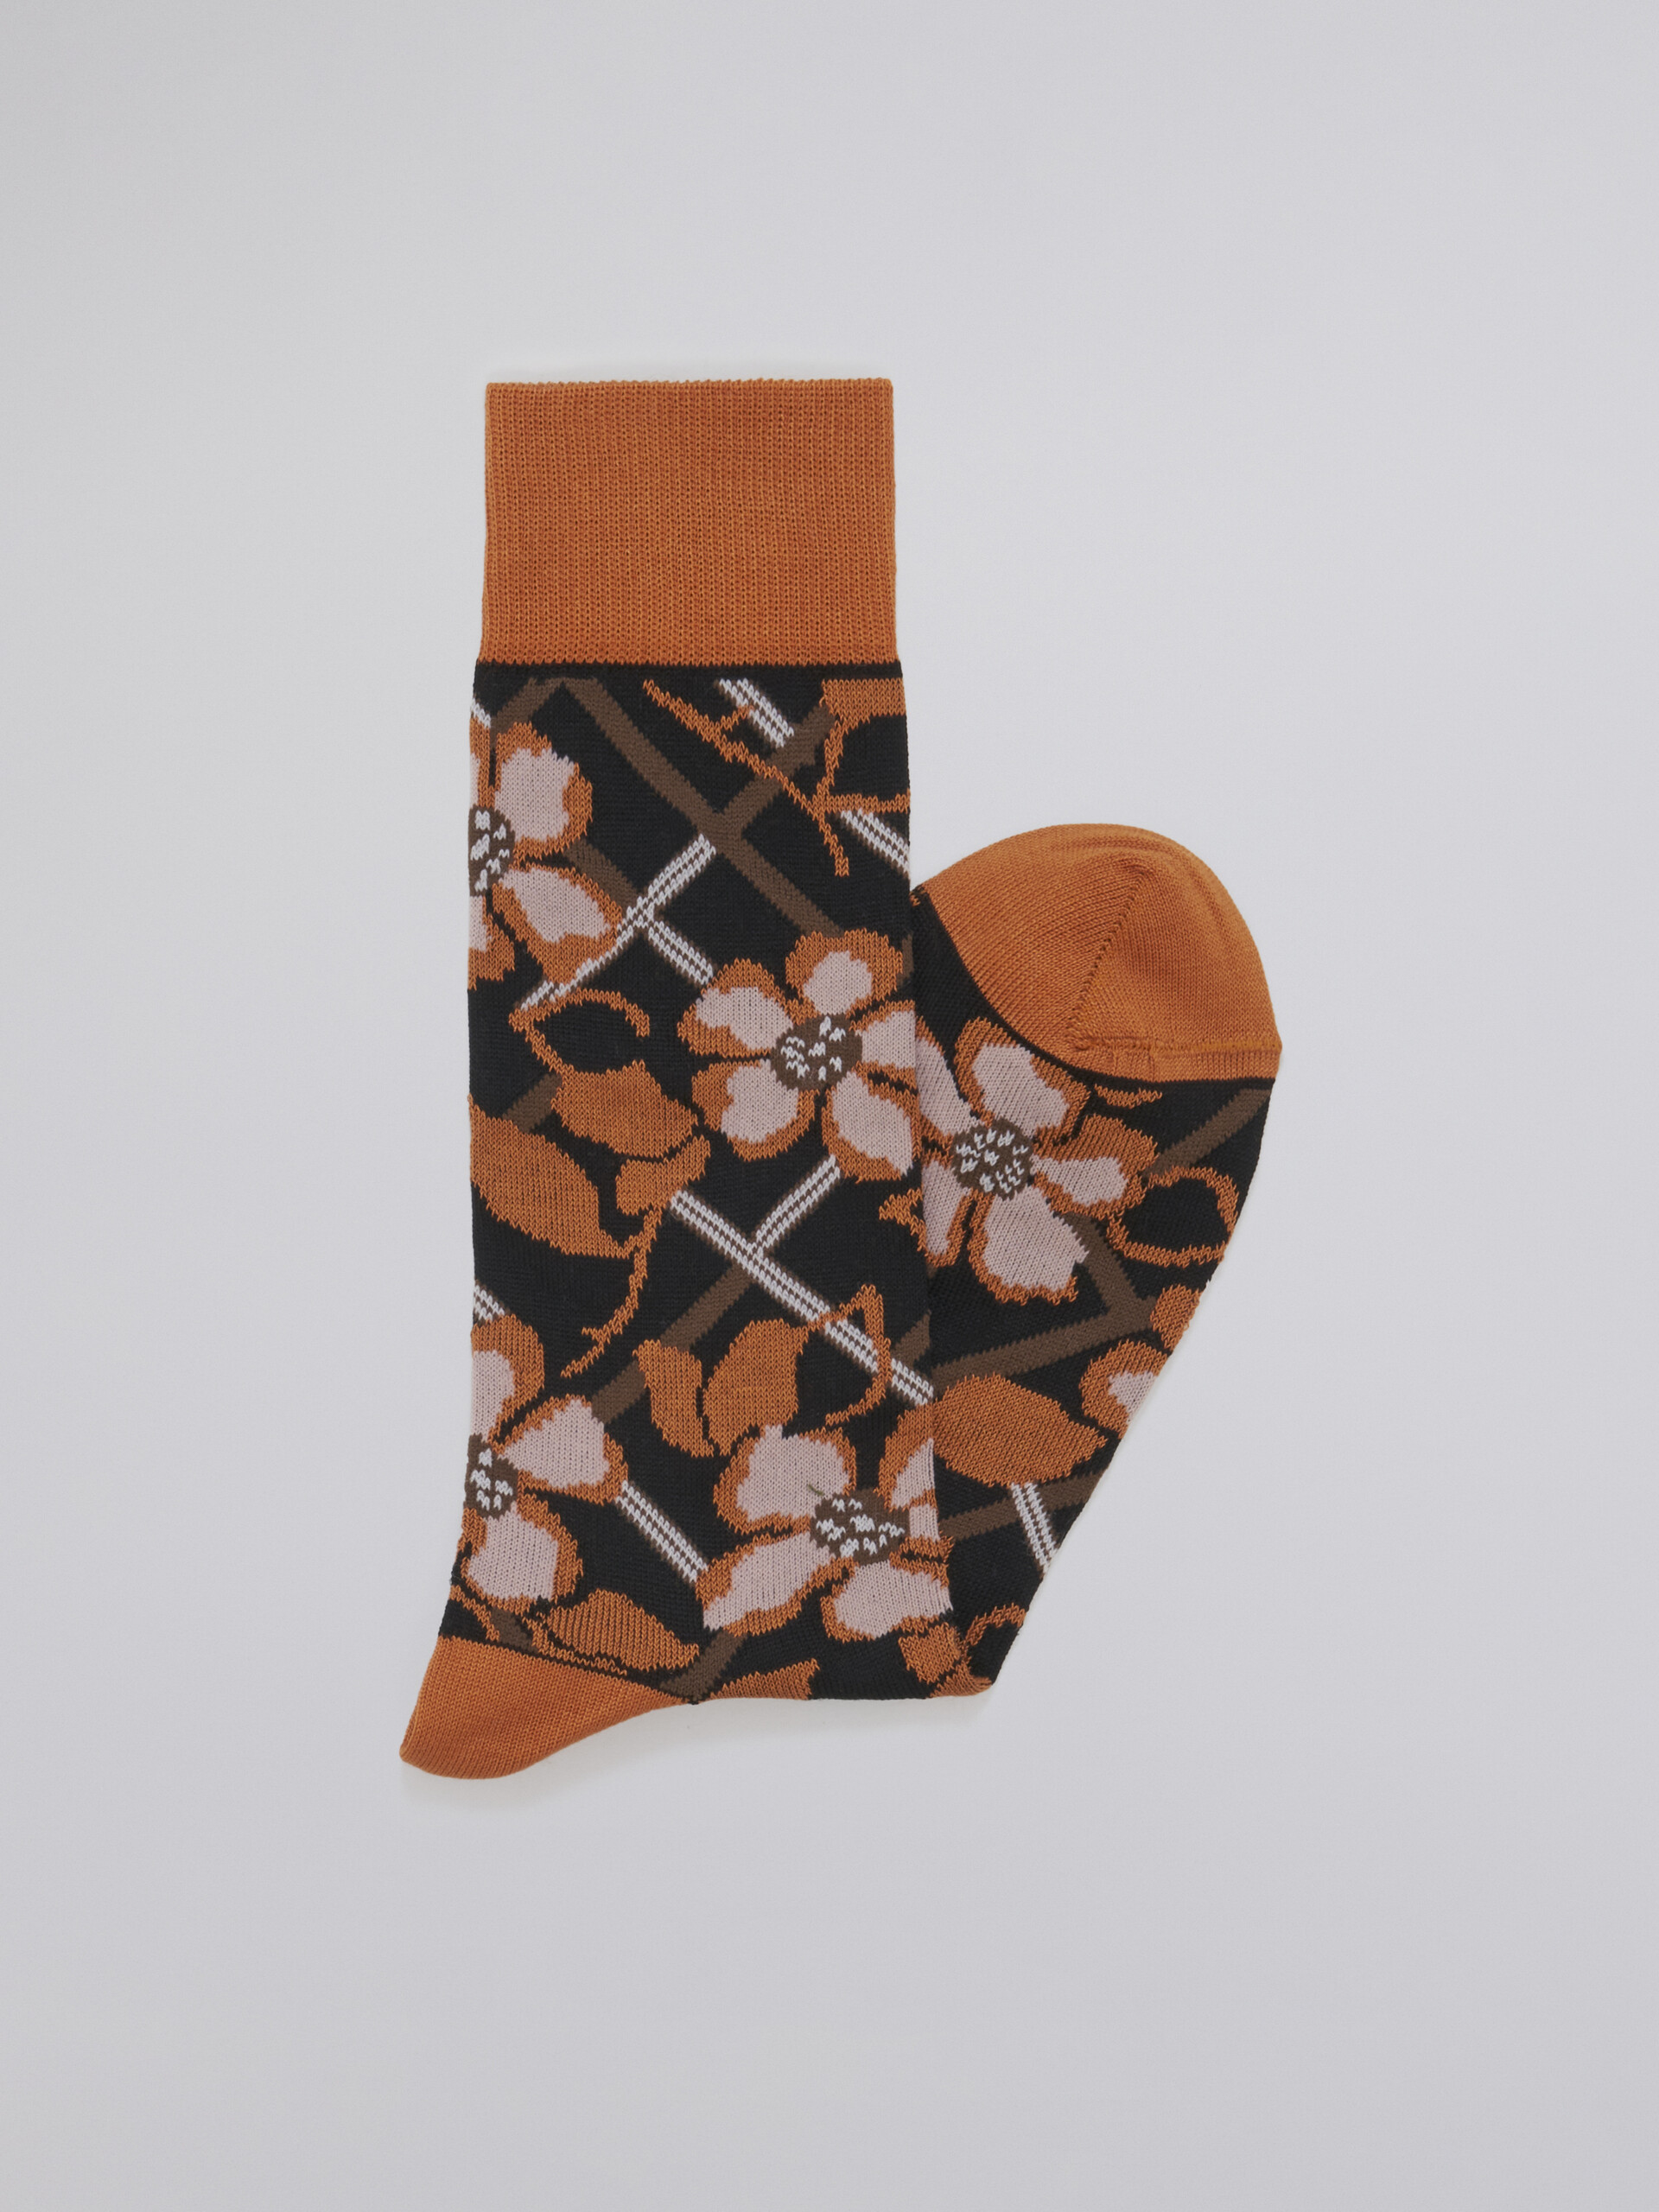 Calza in cotone jacquard e nylon disegno floreale nero - Calze - Image 2